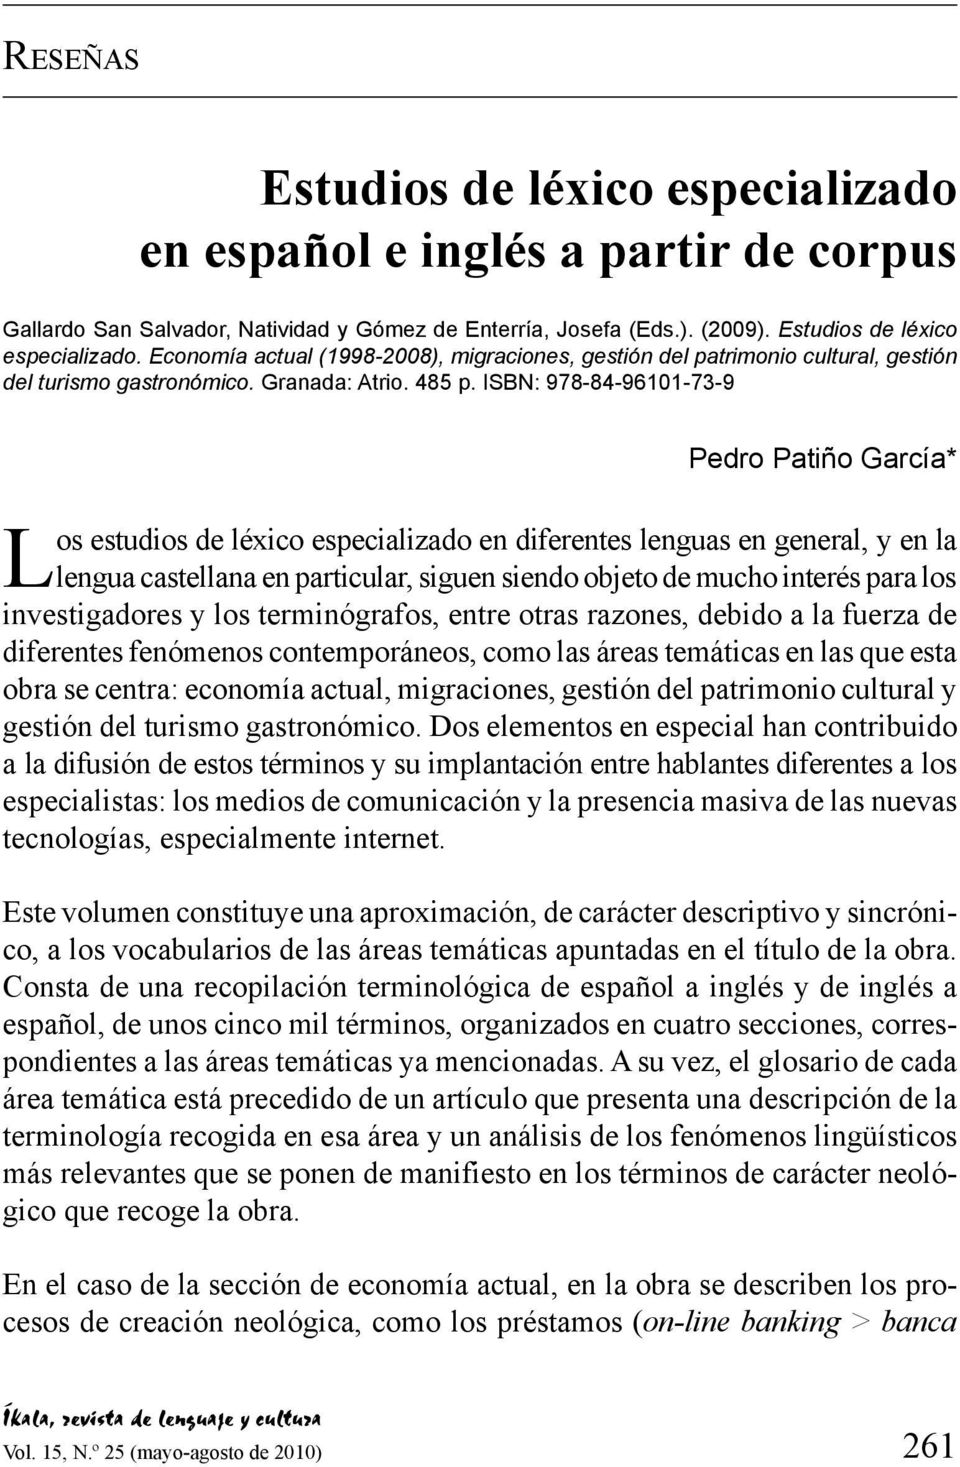 ISBN: 978-84-96101-73-9 Pedro Patiño García* Los estudios de léxico especializado en diferentes lenguas en general, y en la lengua castellana en particular, siguen siendo objeto de mucho interés para